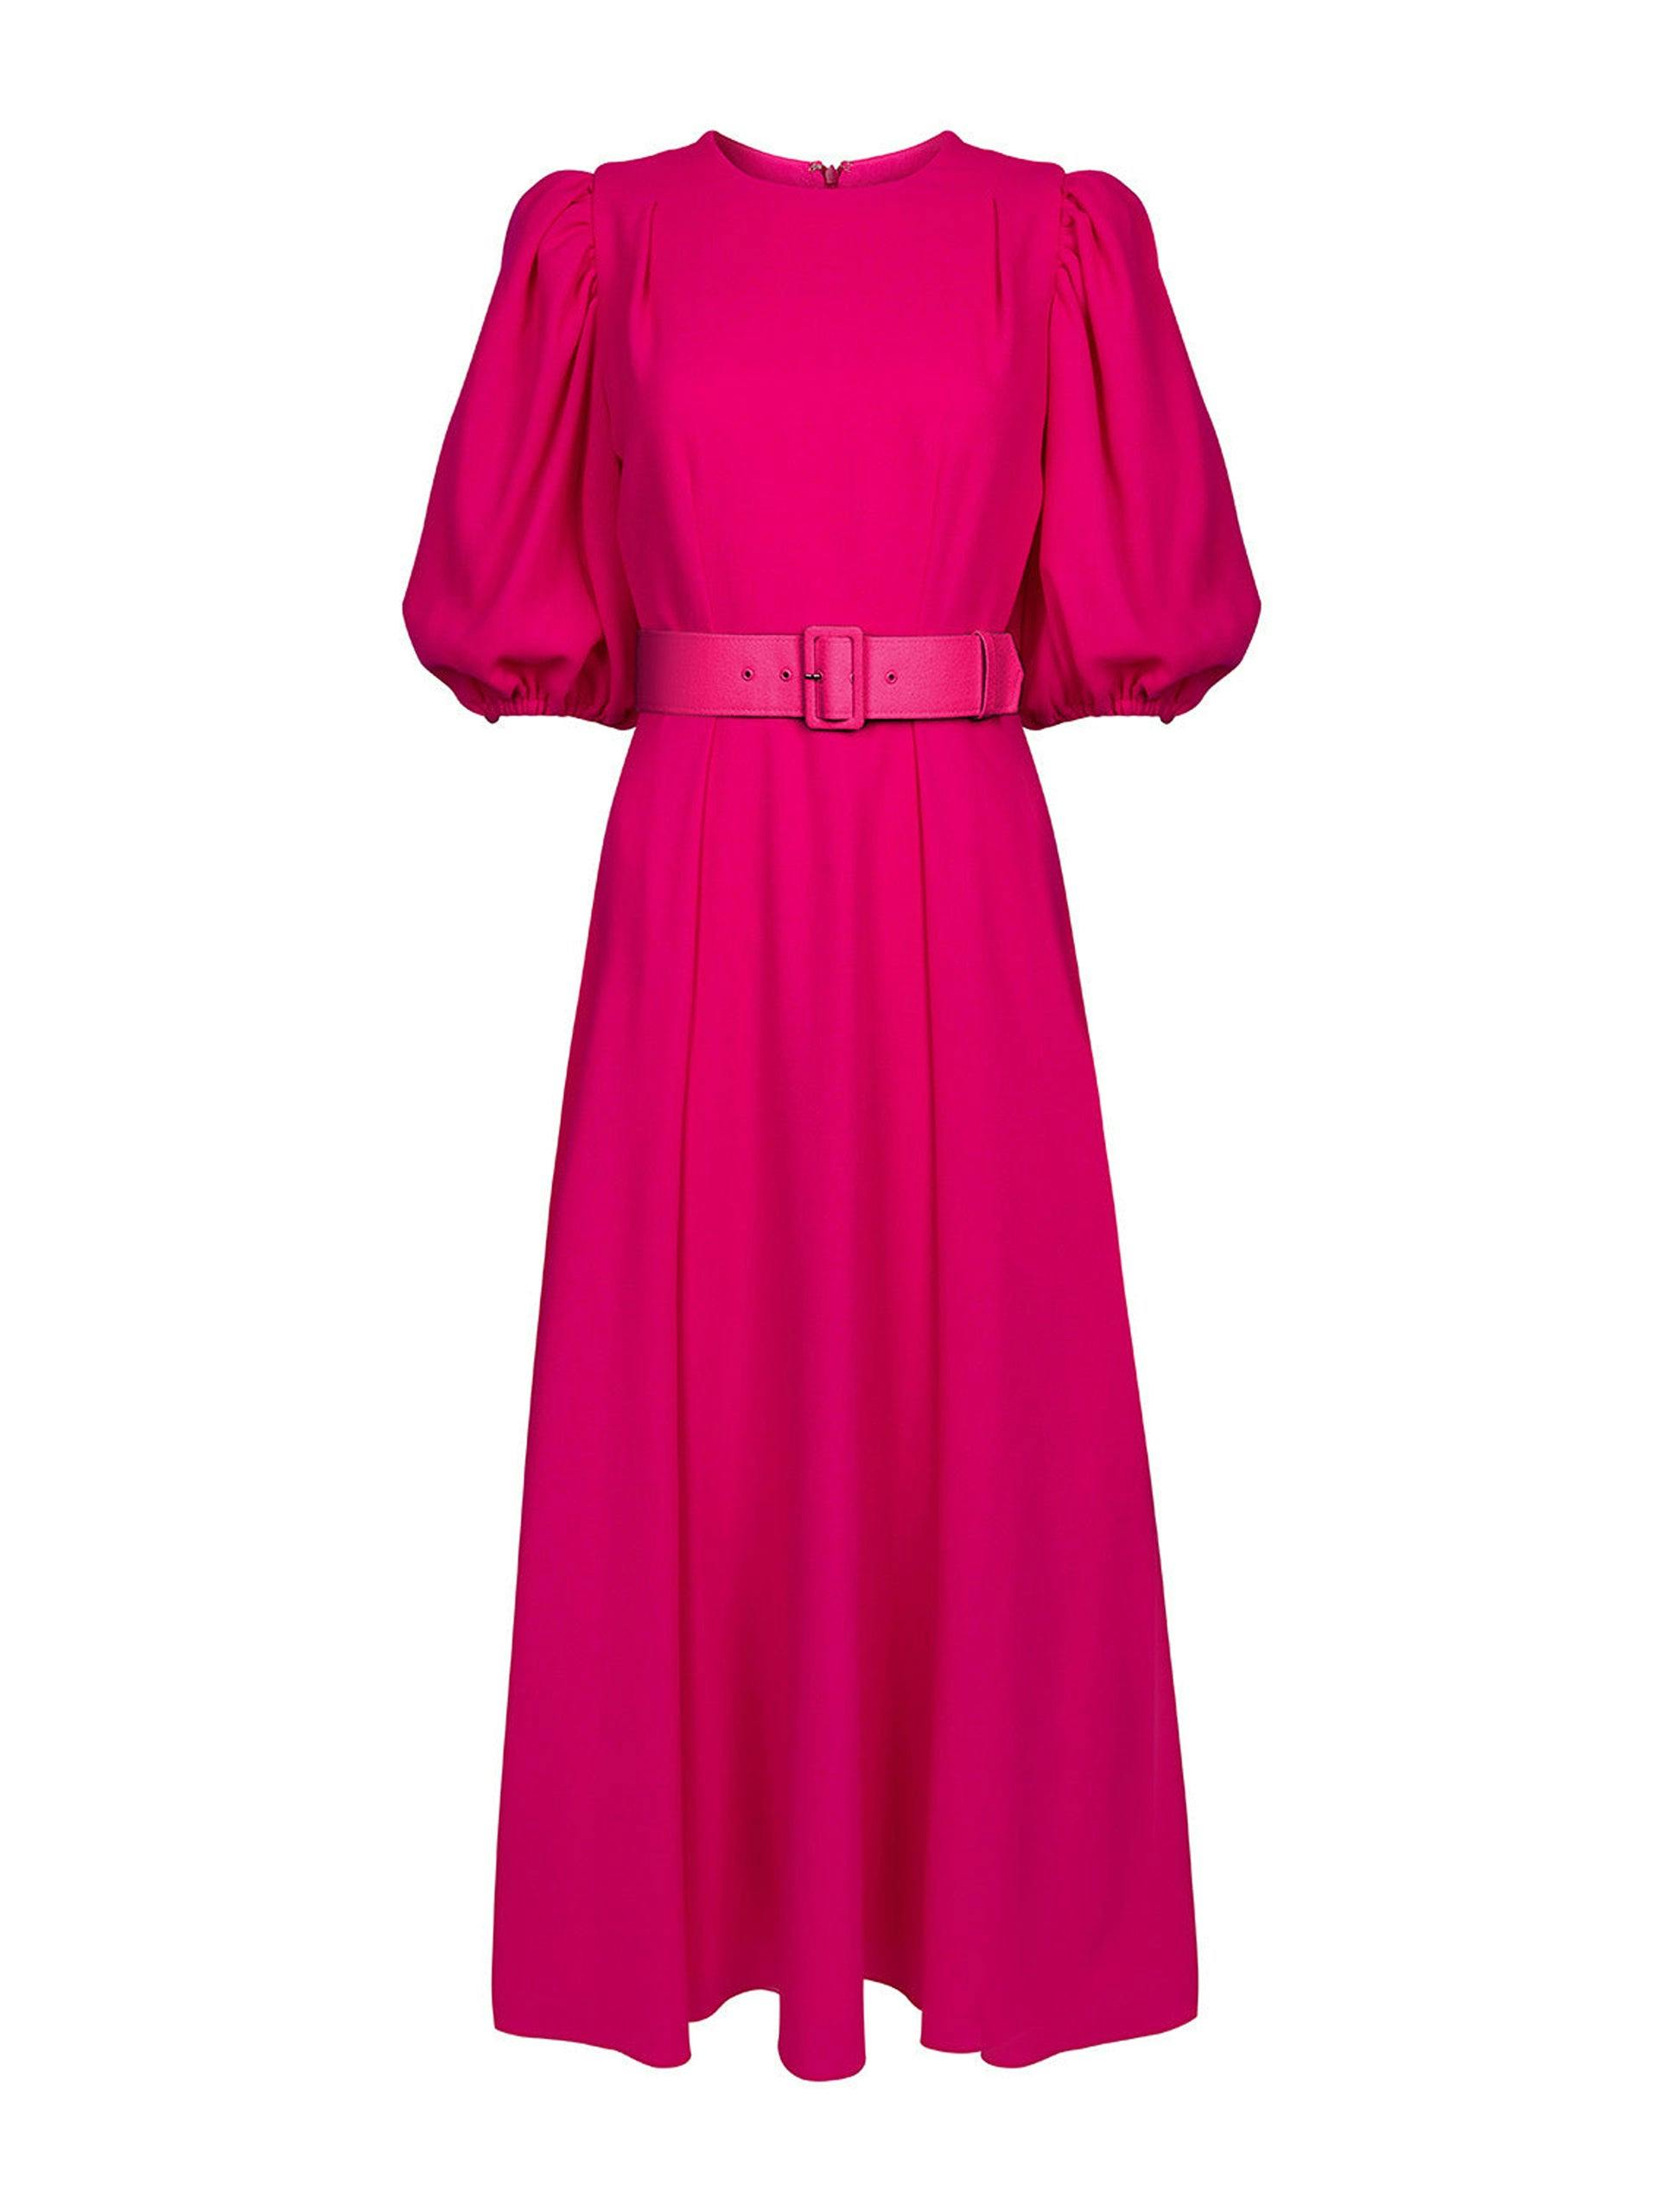 Sienna hot pink dress